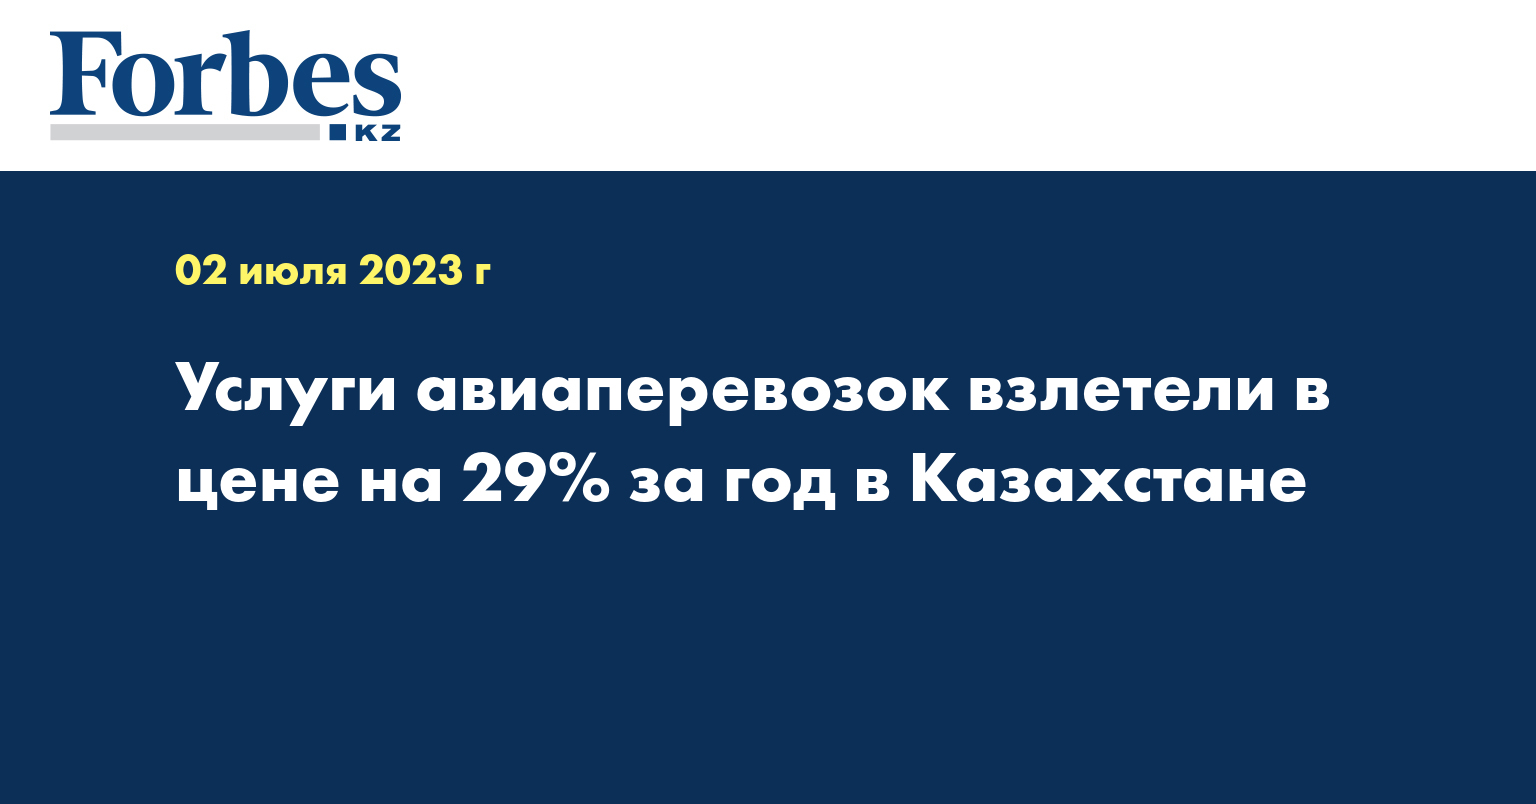 Услуги авиаперевозок взлетели в цене на 29% за год в Казахстане